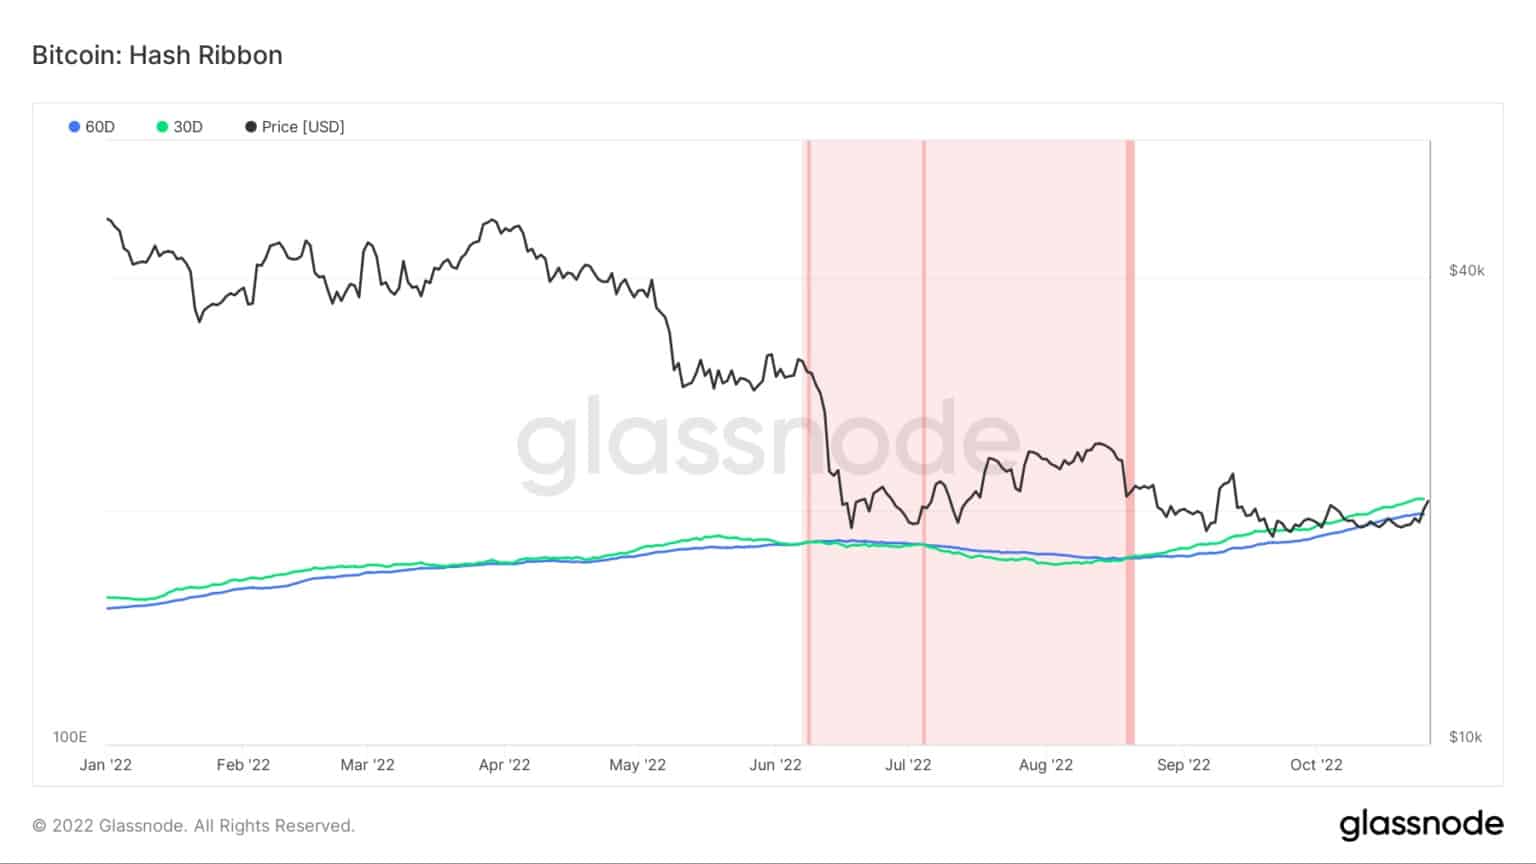 Grafiek met de Bitcoin hash ribbon indicator van januari 2022 tot oktober 2022 (Bron: Glassnode)